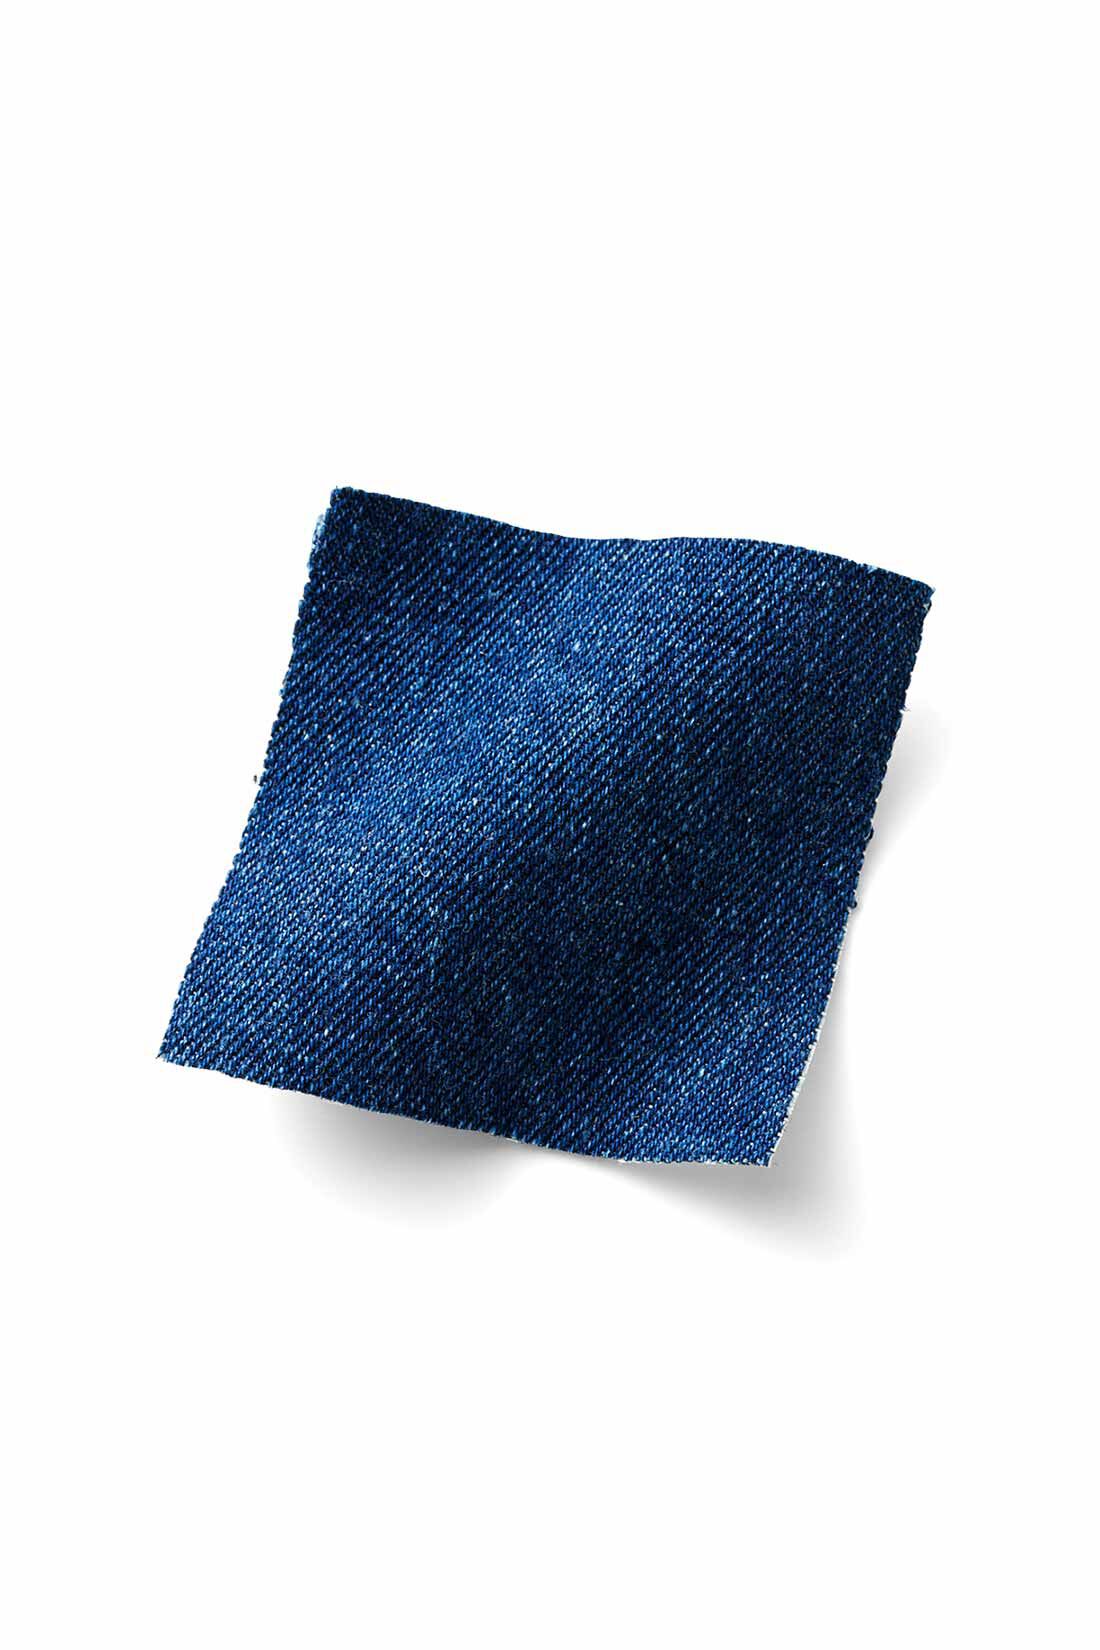 IEDIT|IEDIT[イディット]　福田麻琴さんコラボ 新鮮シルエットで定番を更新 ぼんたんデニムパンツ〈ブルー〉|ごわつき感のない適度な厚みの8.5ライトオンスデニムに洗いをかけた、こだわりのミドルブルー。